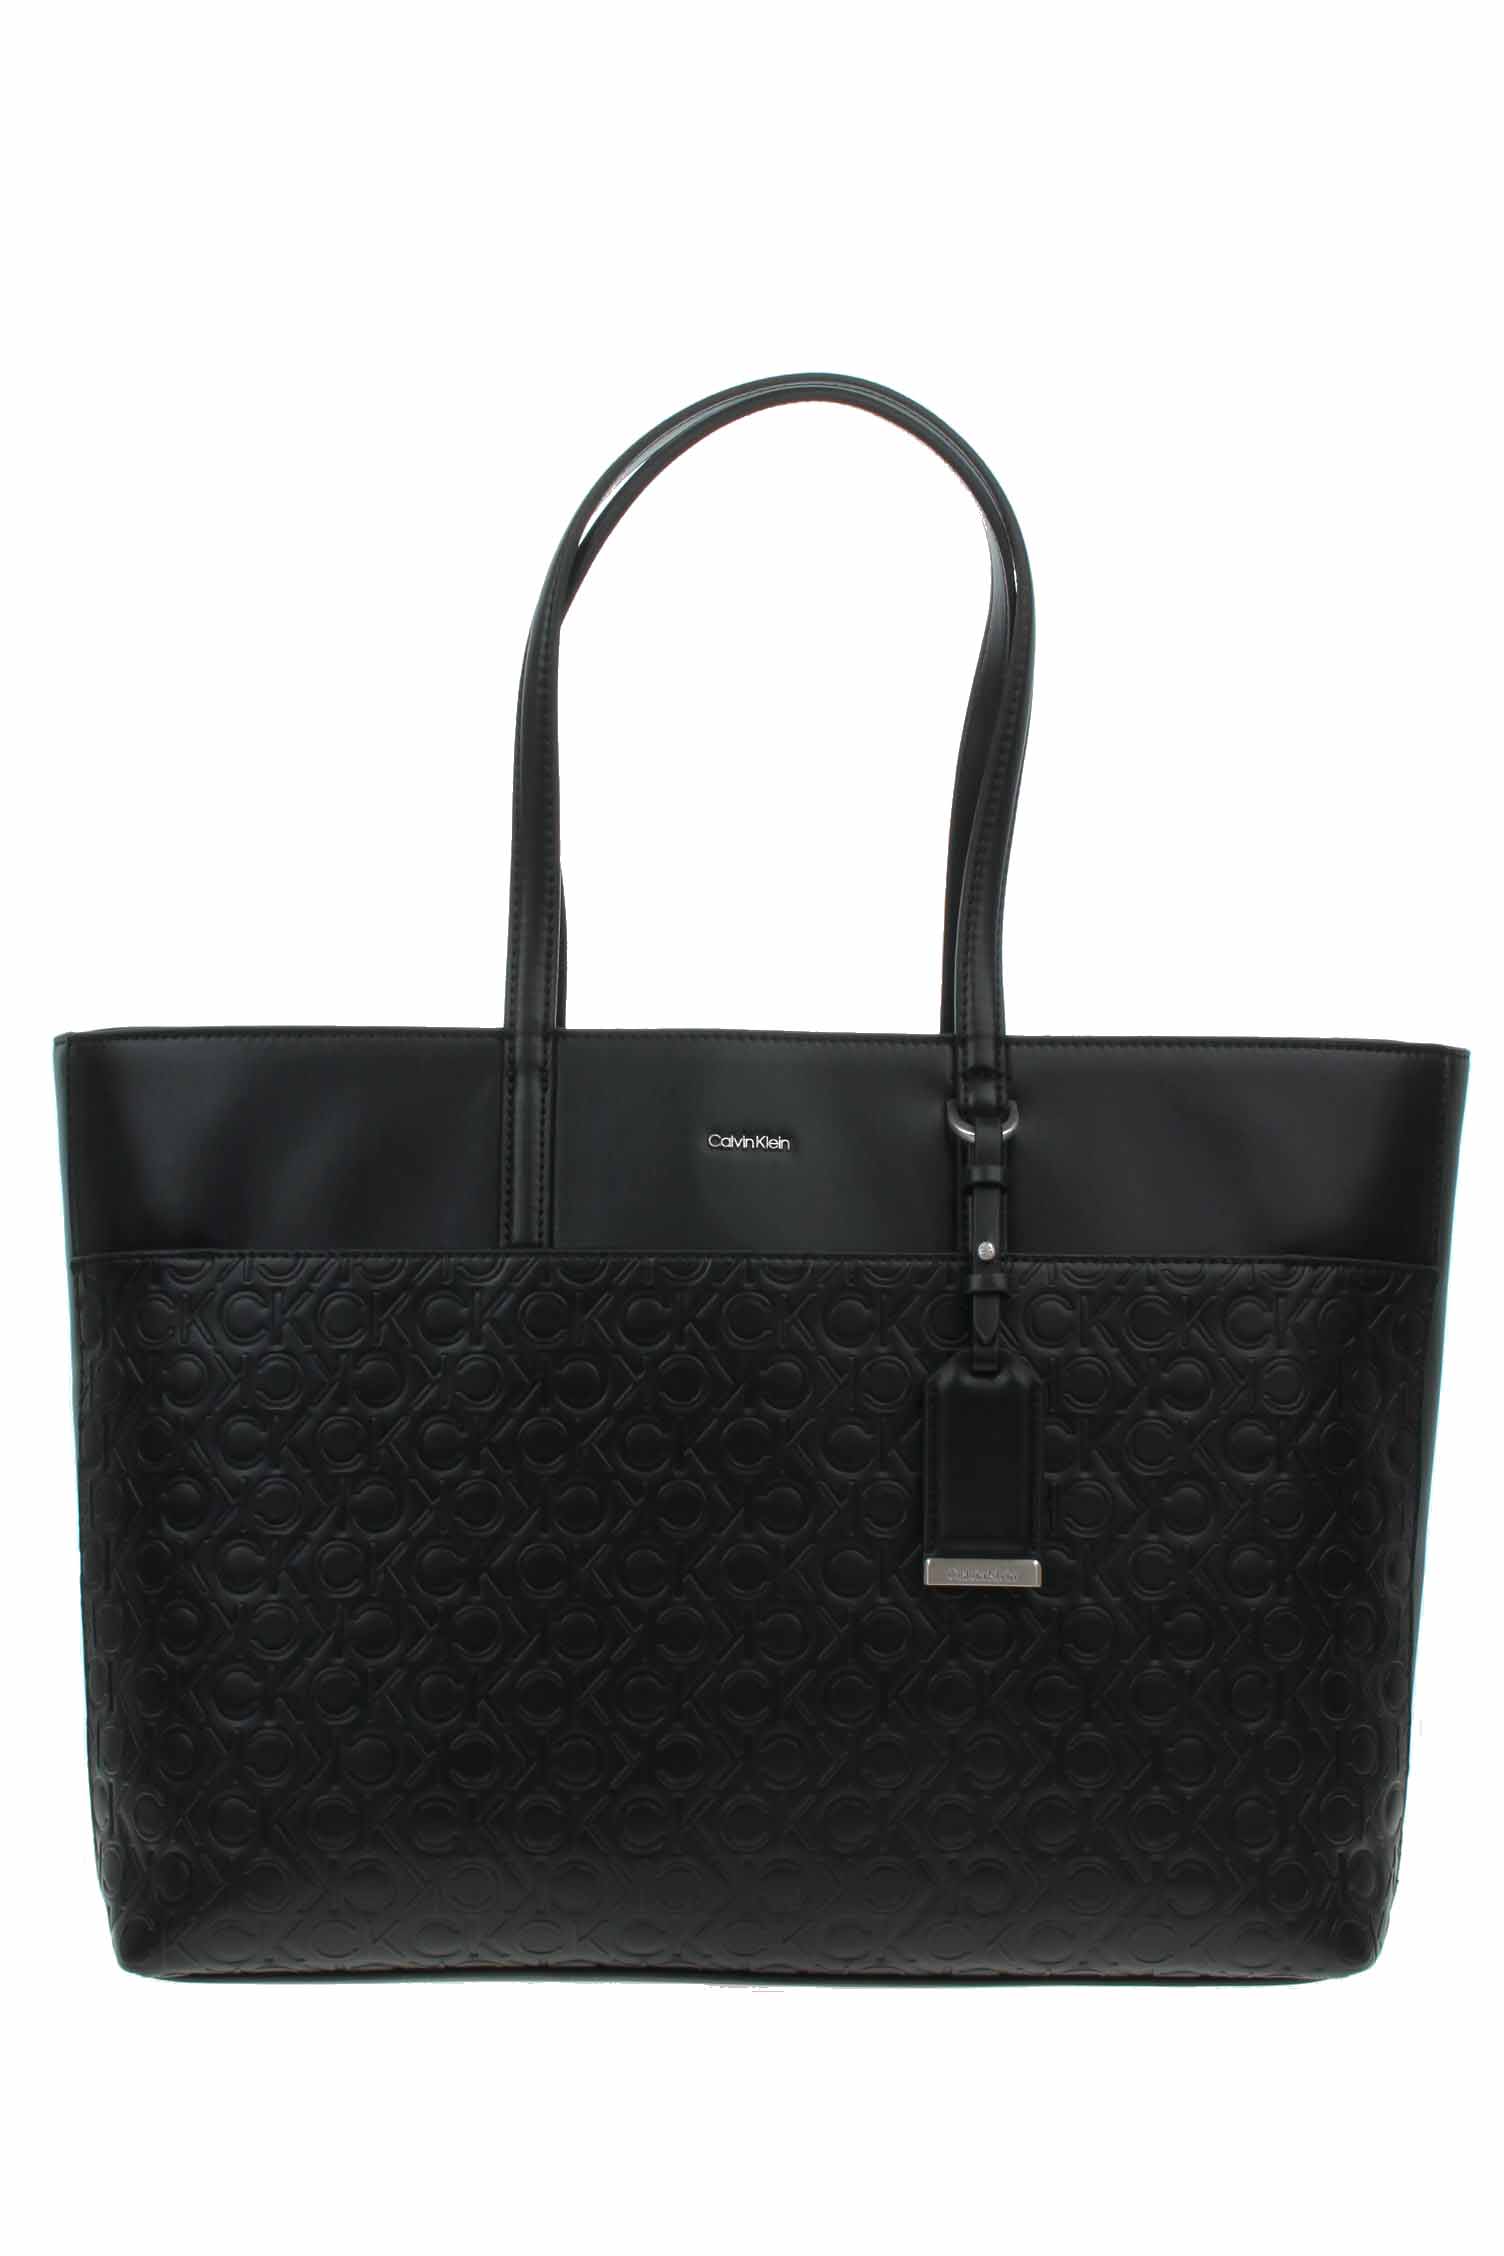 Calvin Klein dámská kabelka K60K610924 Ck Black velikost 1